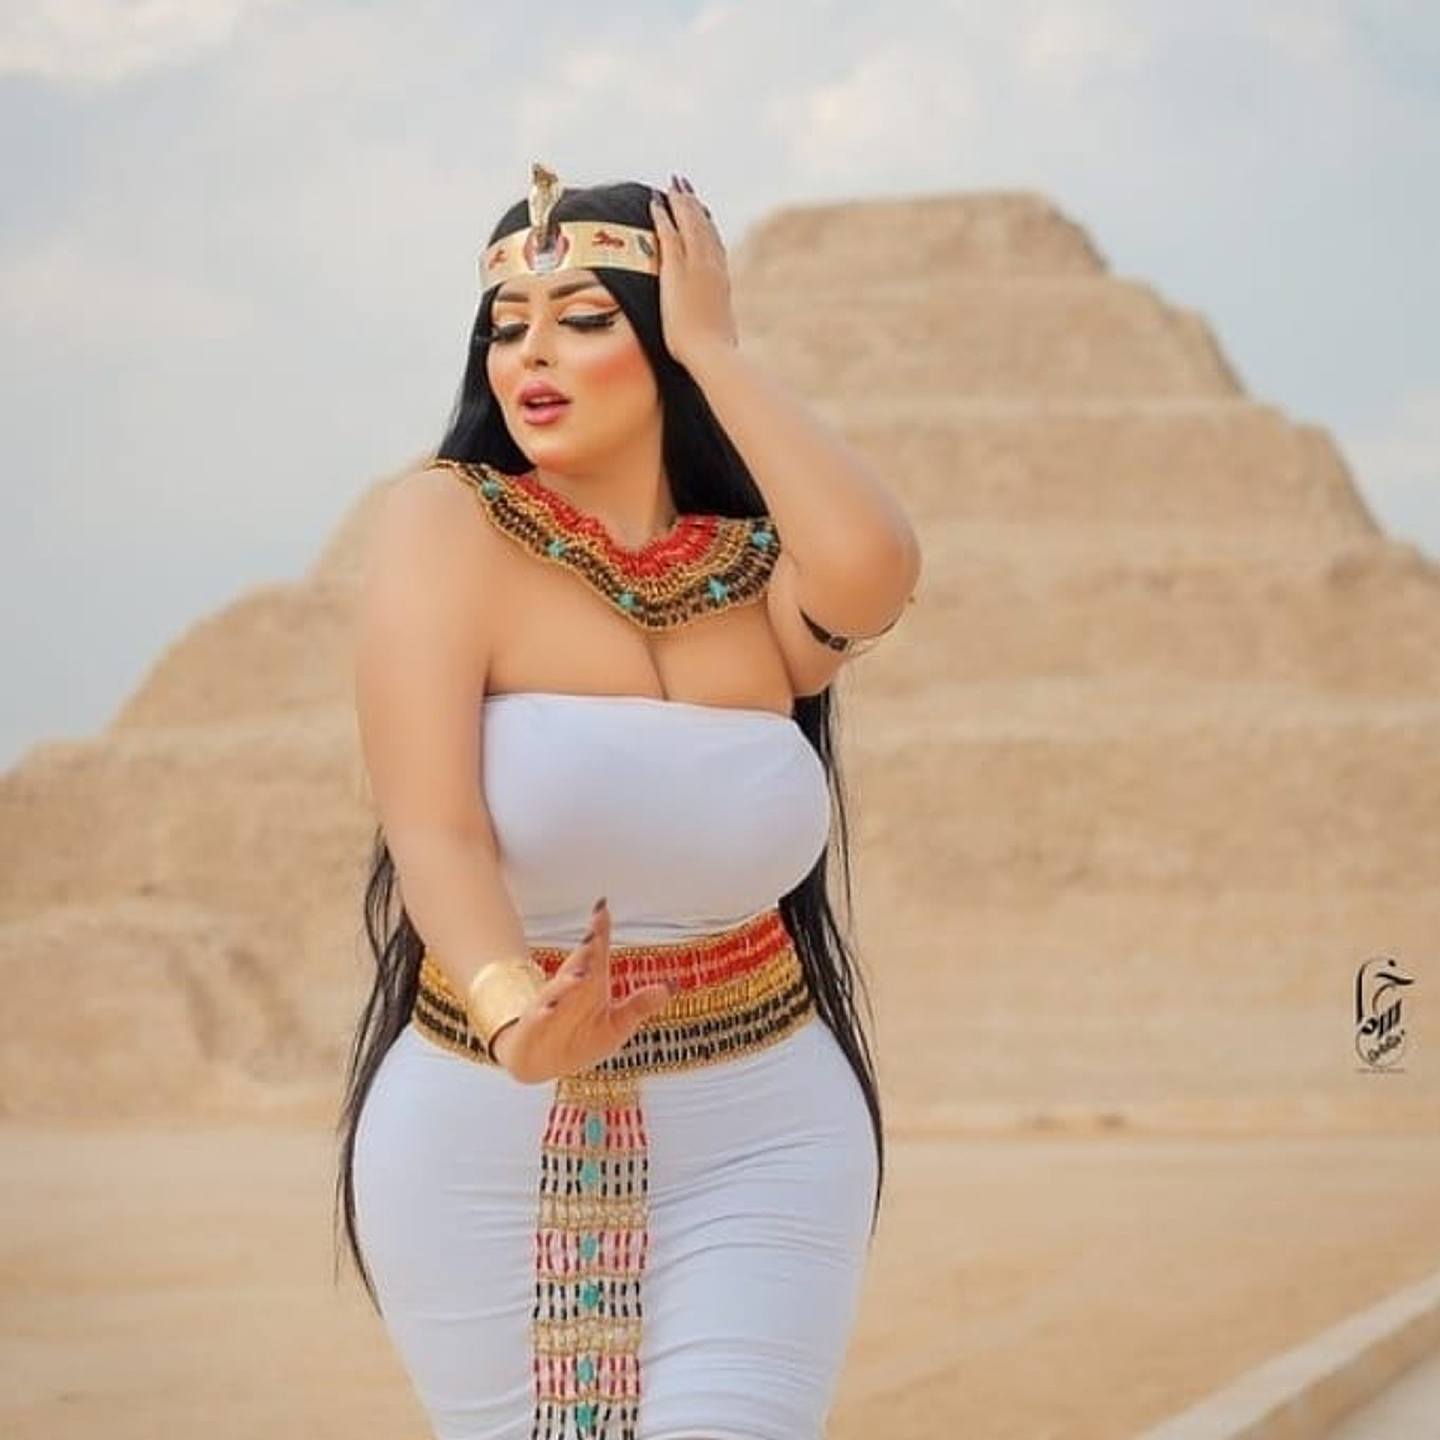 阿里希米在朱塞尔金字塔前穿上一身仿古埃及跳舞装束拍摄写真集。 （Facebook图片）